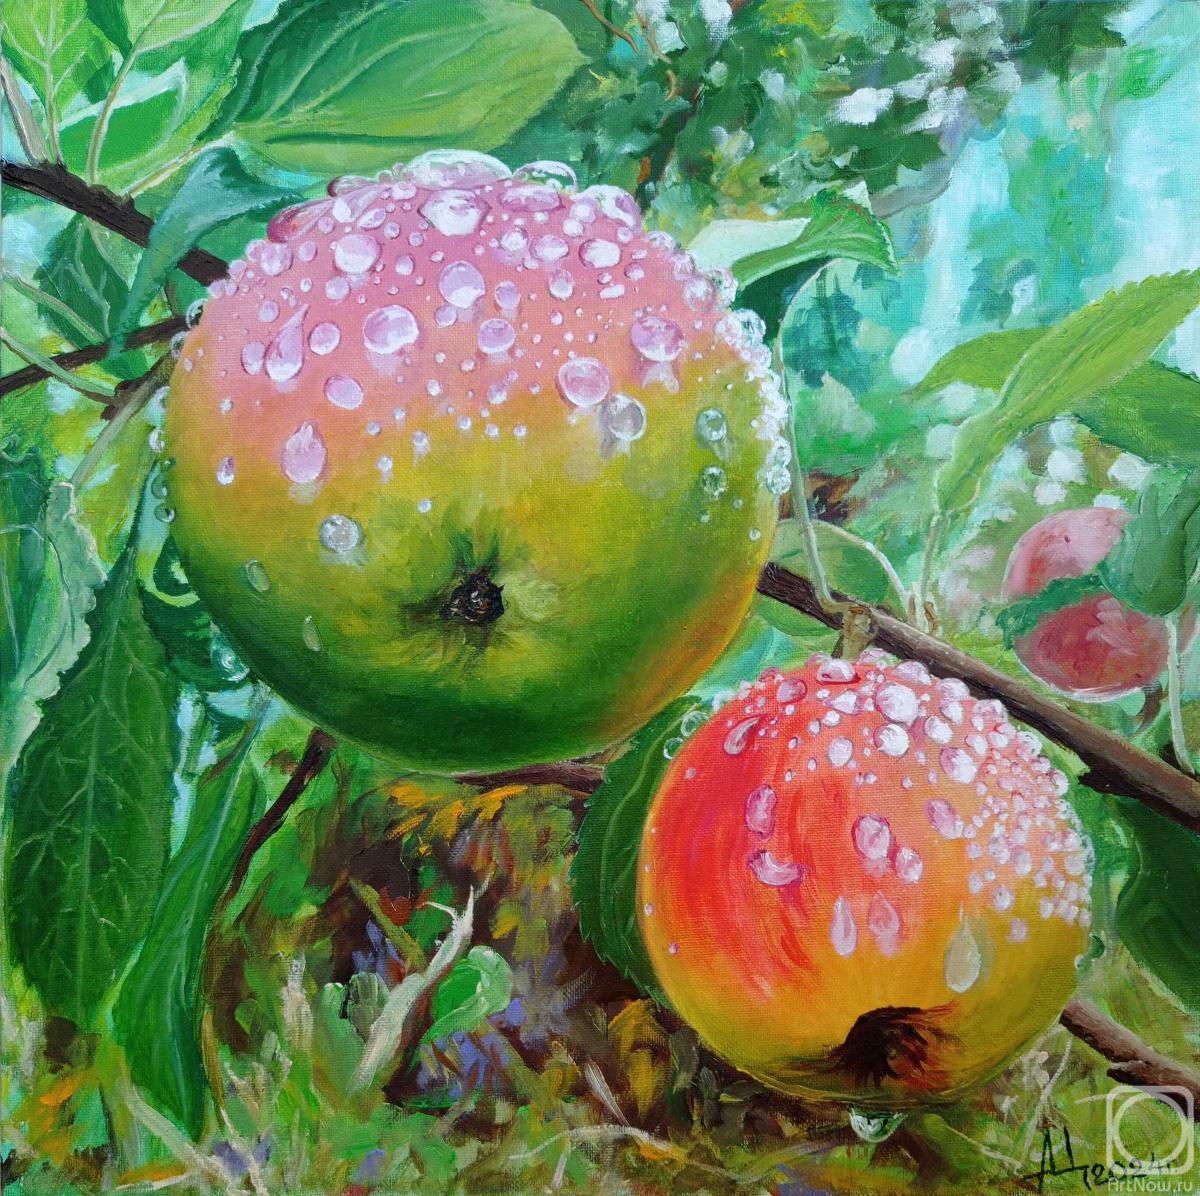 Tsygankov Alexander. Siberian apples